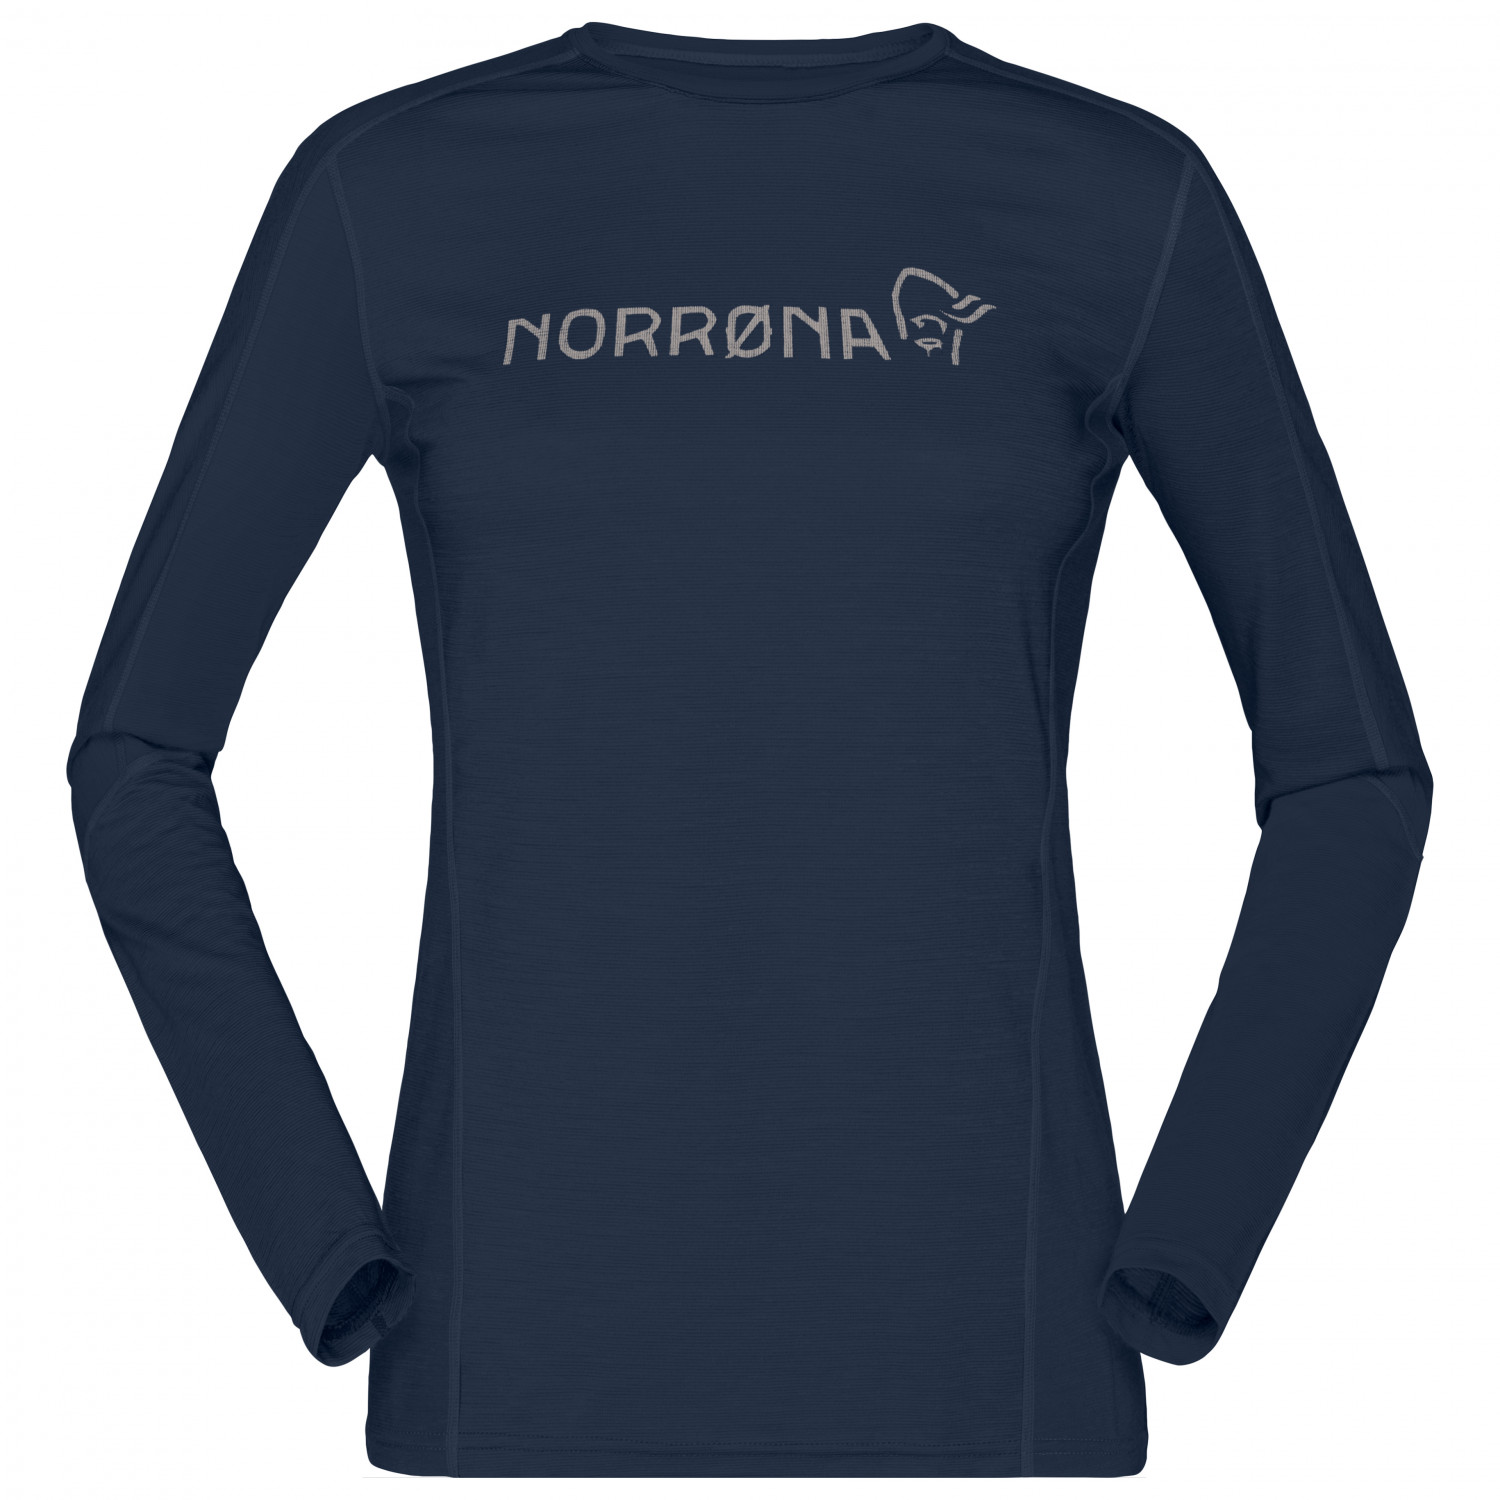 Рубашка из мериноса Norrøna Women's Falketind Equaliser Merino Round Neck, цвет Indigo Night цена и фото